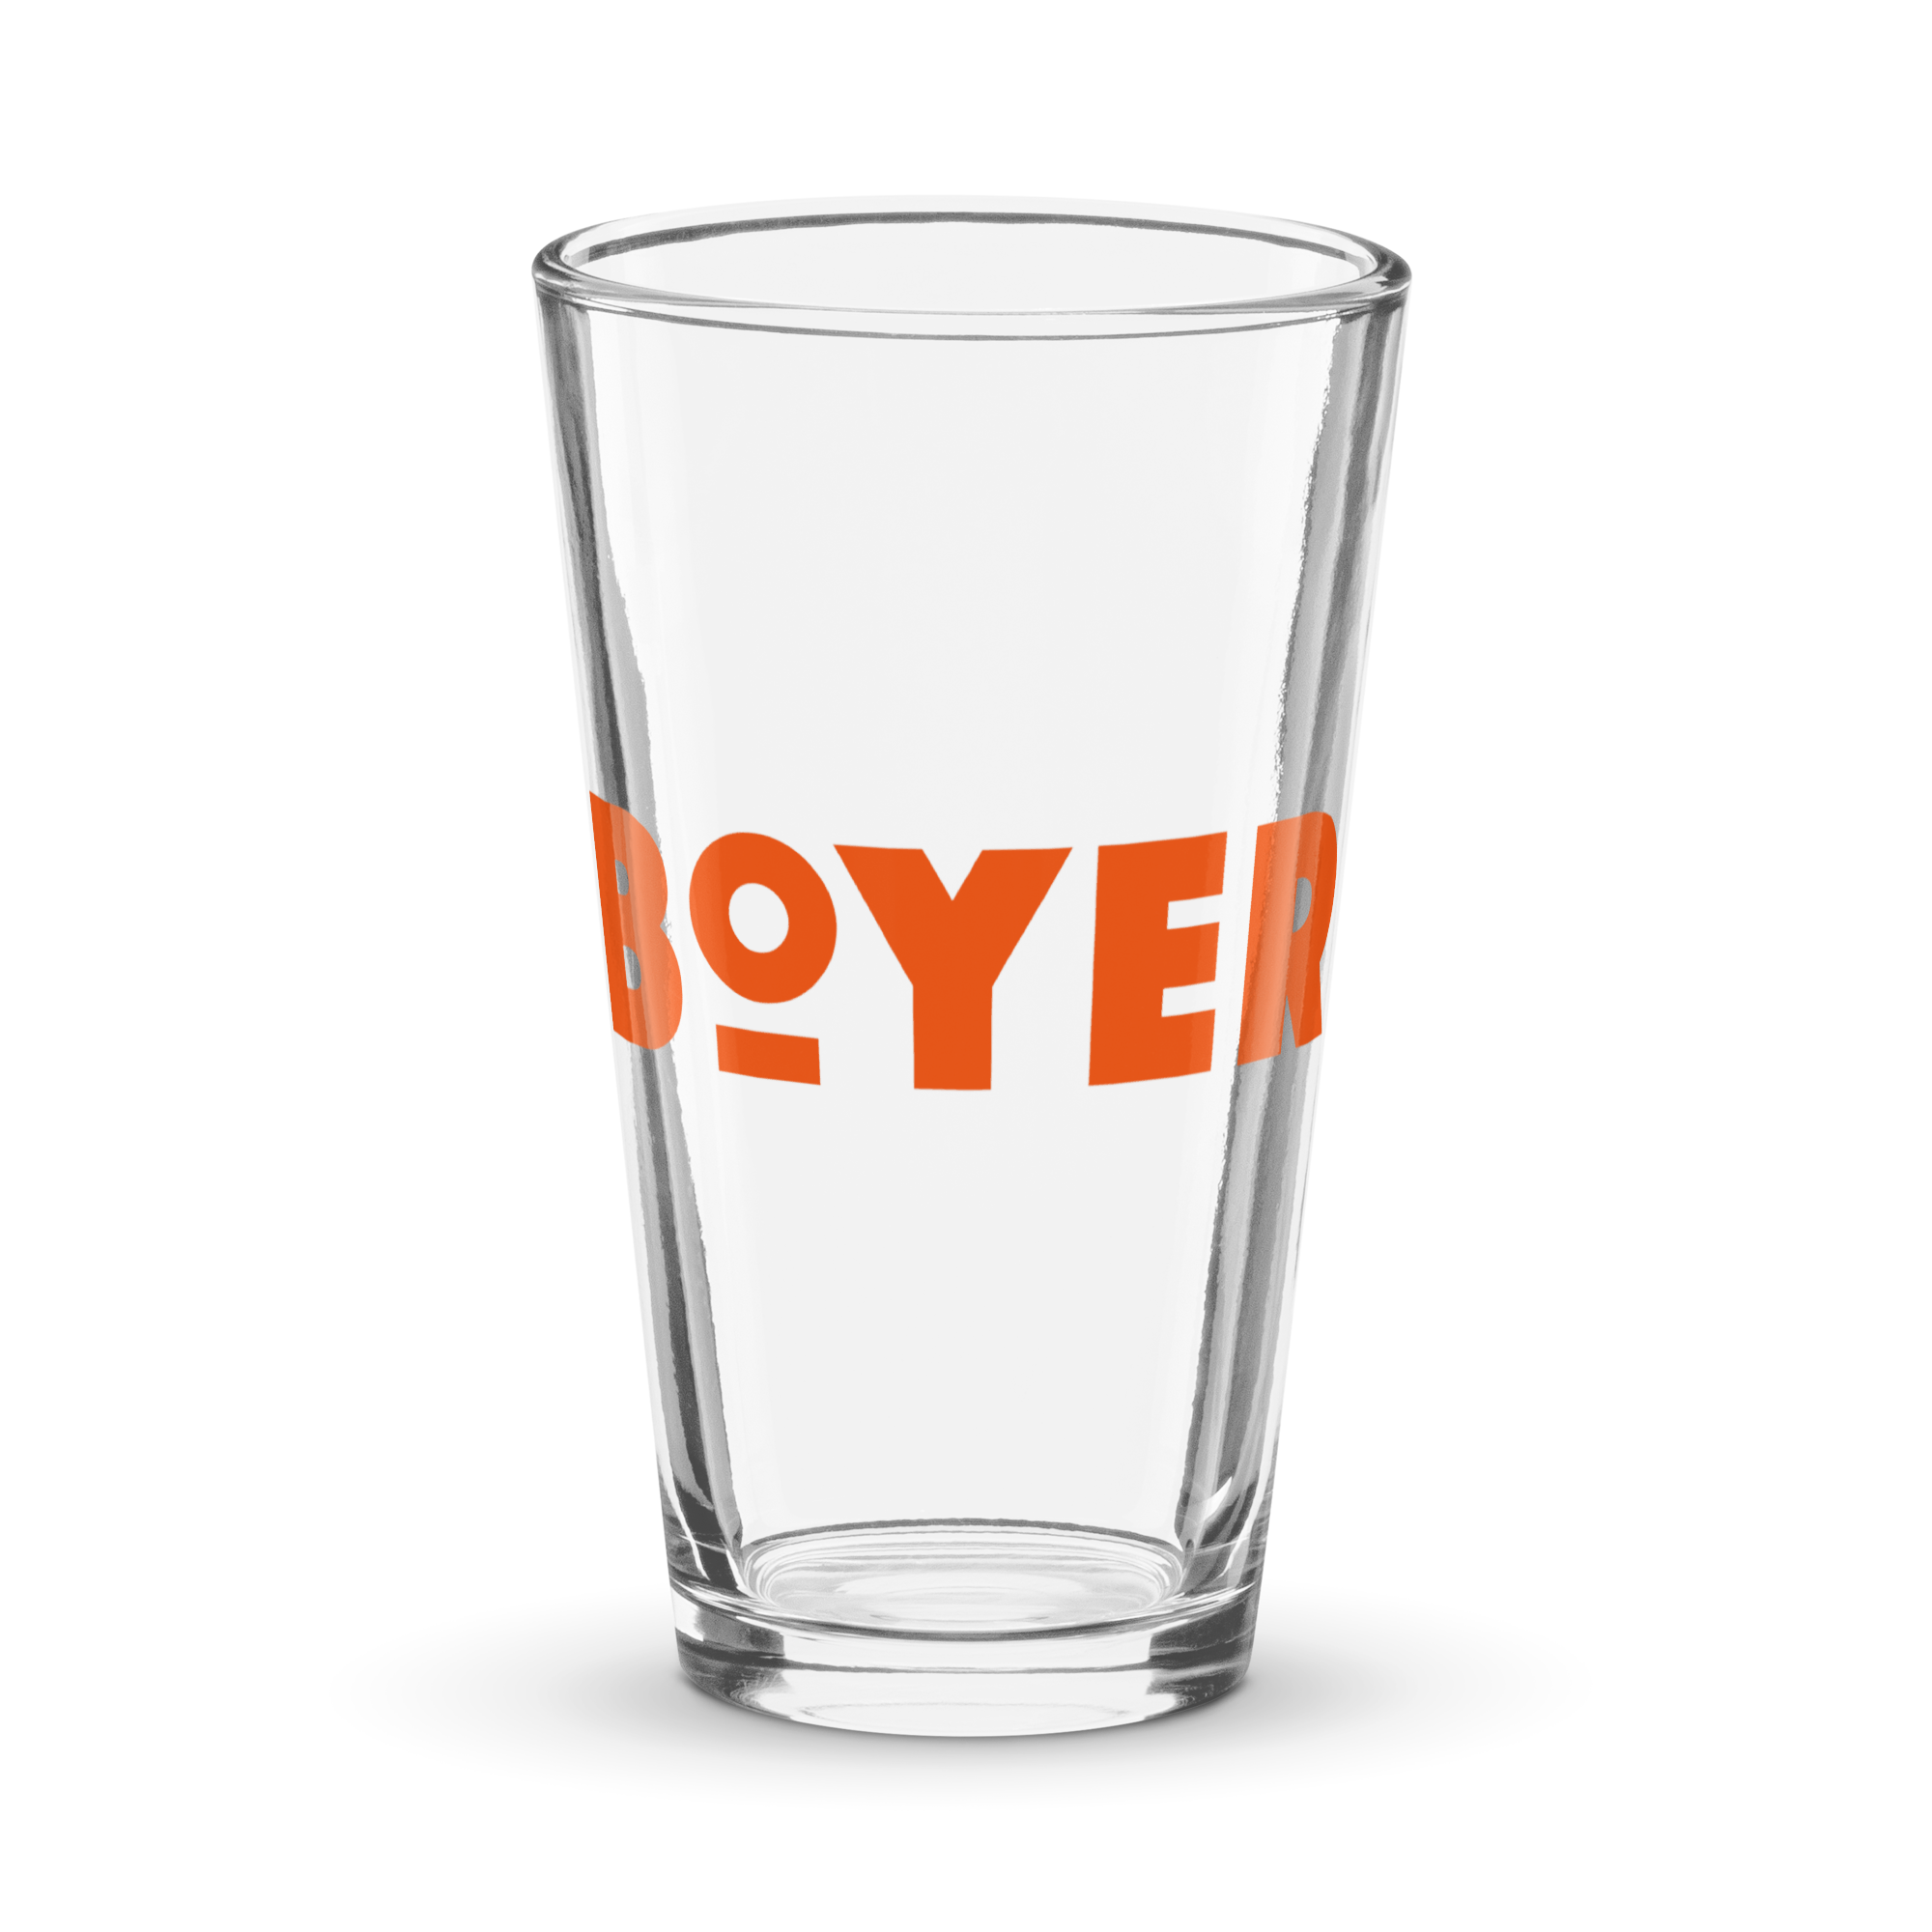 Boyer shaker pint glass